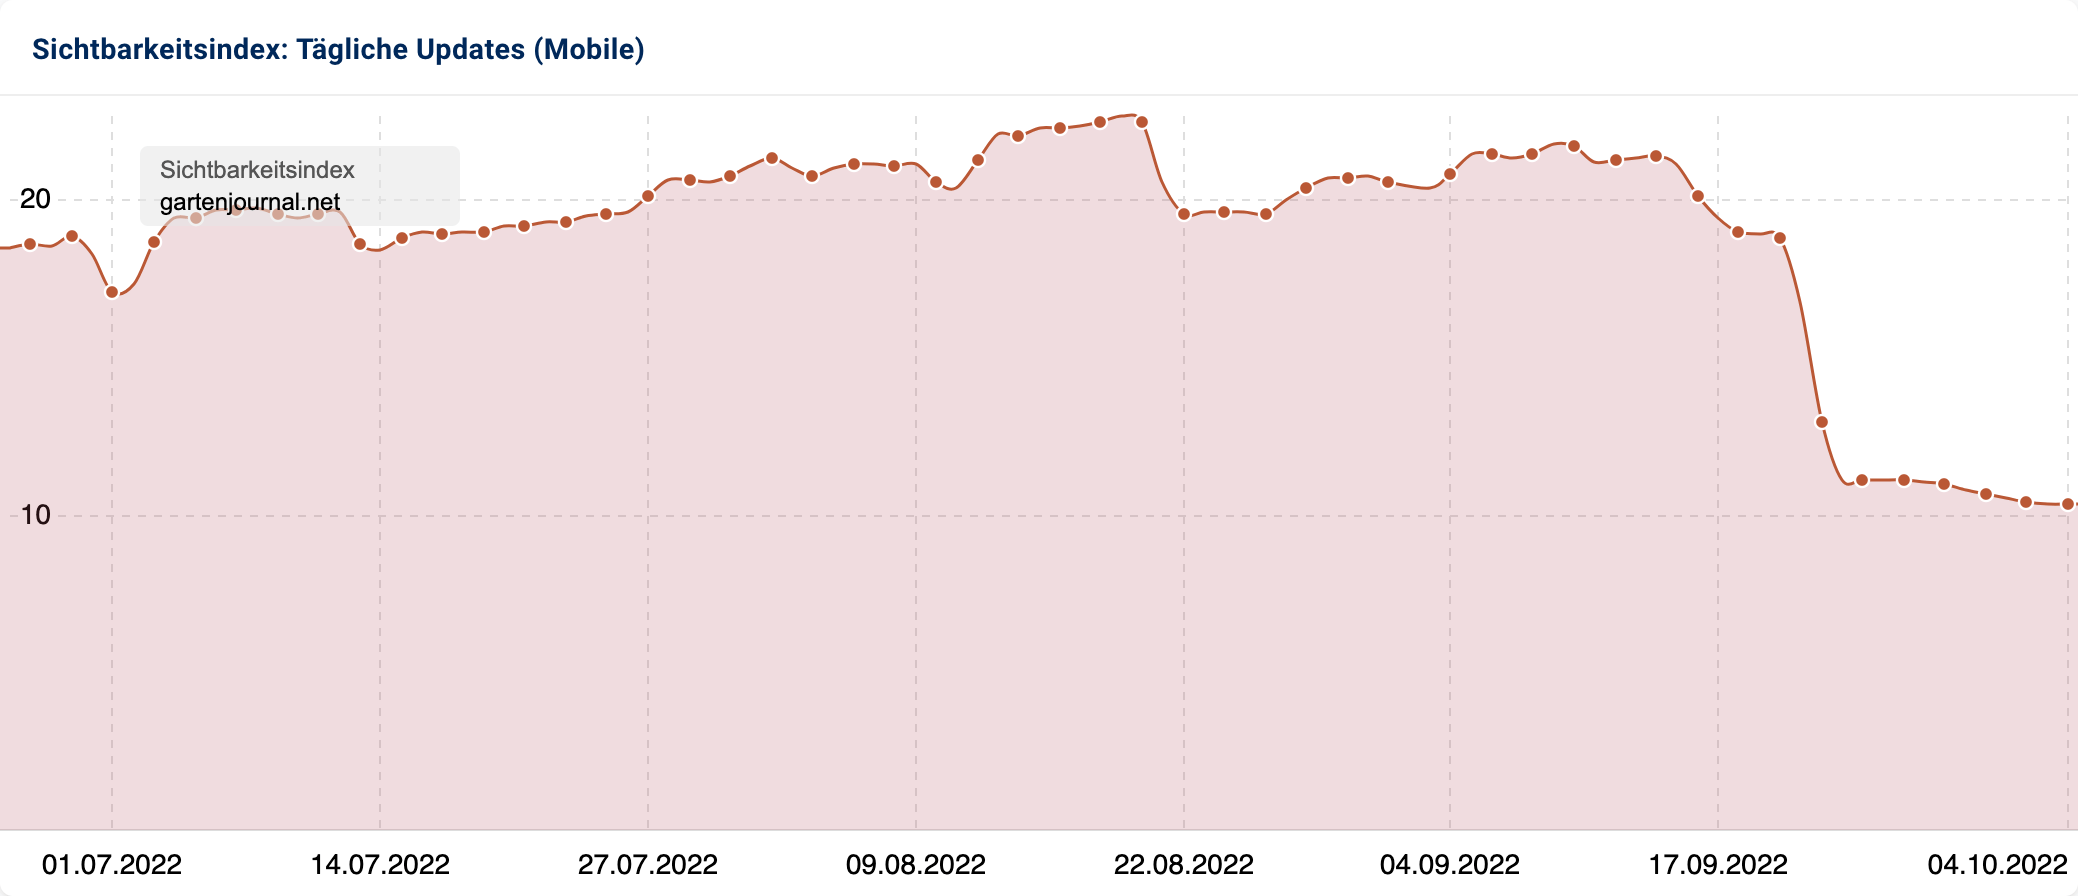 Die Domain gartenjournal.net hatte in den letzten 90 Tagen (bis 26.06.2022) eher einen Seitwärtstrend, dann ist die Sichtbarkeit Mitte September stark, etwa um ein Drittel, gefallen.